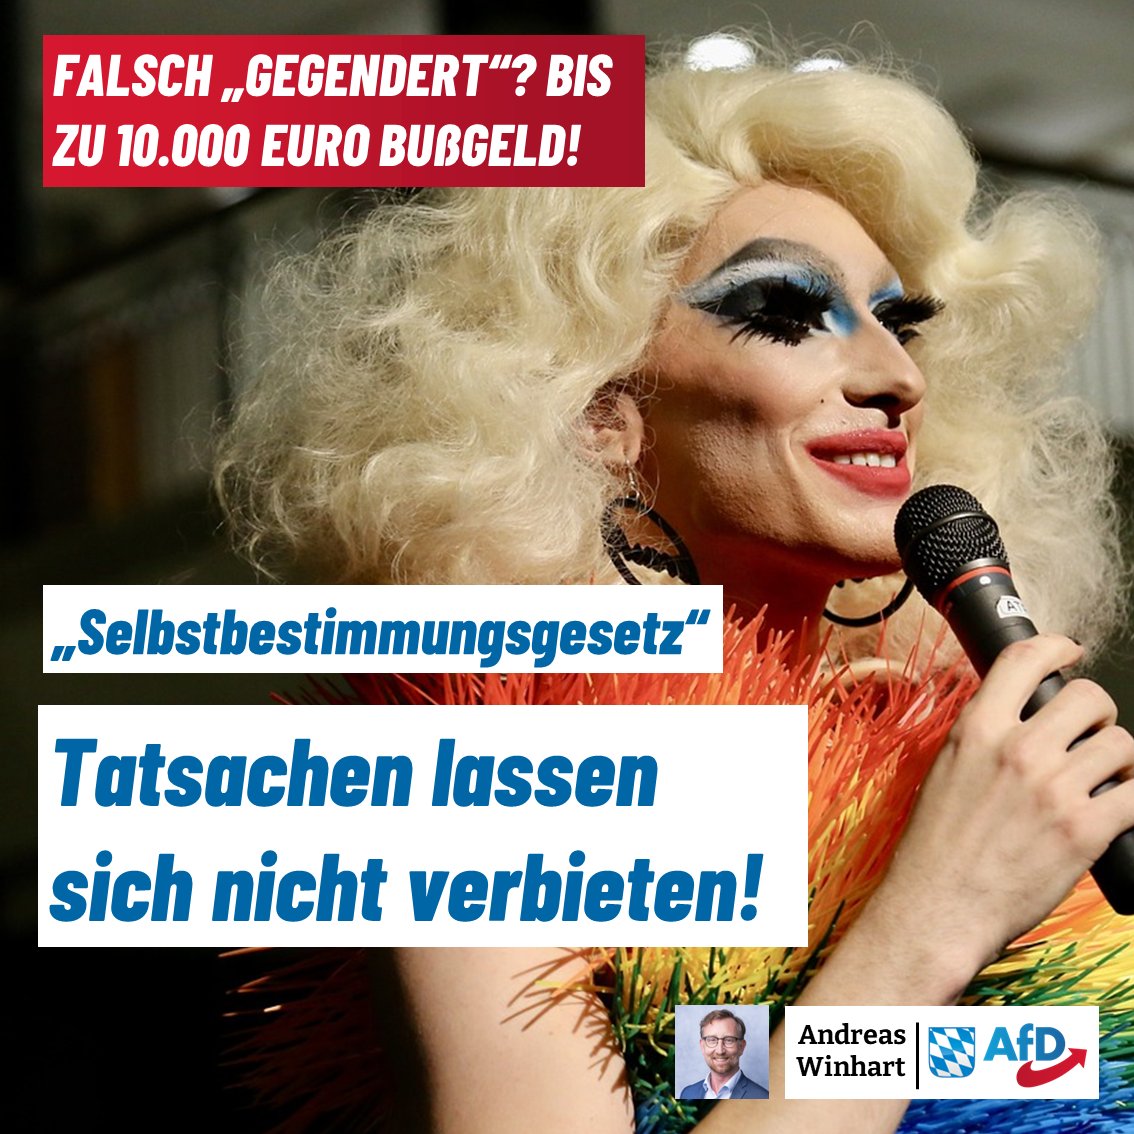 +++Falsch 'gegendert'? Bis zu 10.000 Euro Bußgeld!+++

Heute steht im #Bundestag das #Selbstbestimmungsgesetz zur Abstimmung. Falls dieses Gesetz durchgeht und danach 'Trans-Personen' mit ihrem Geburtsnamen oder ihrem Geburtsgeschlecht angesprochen werden, drohen drakonische